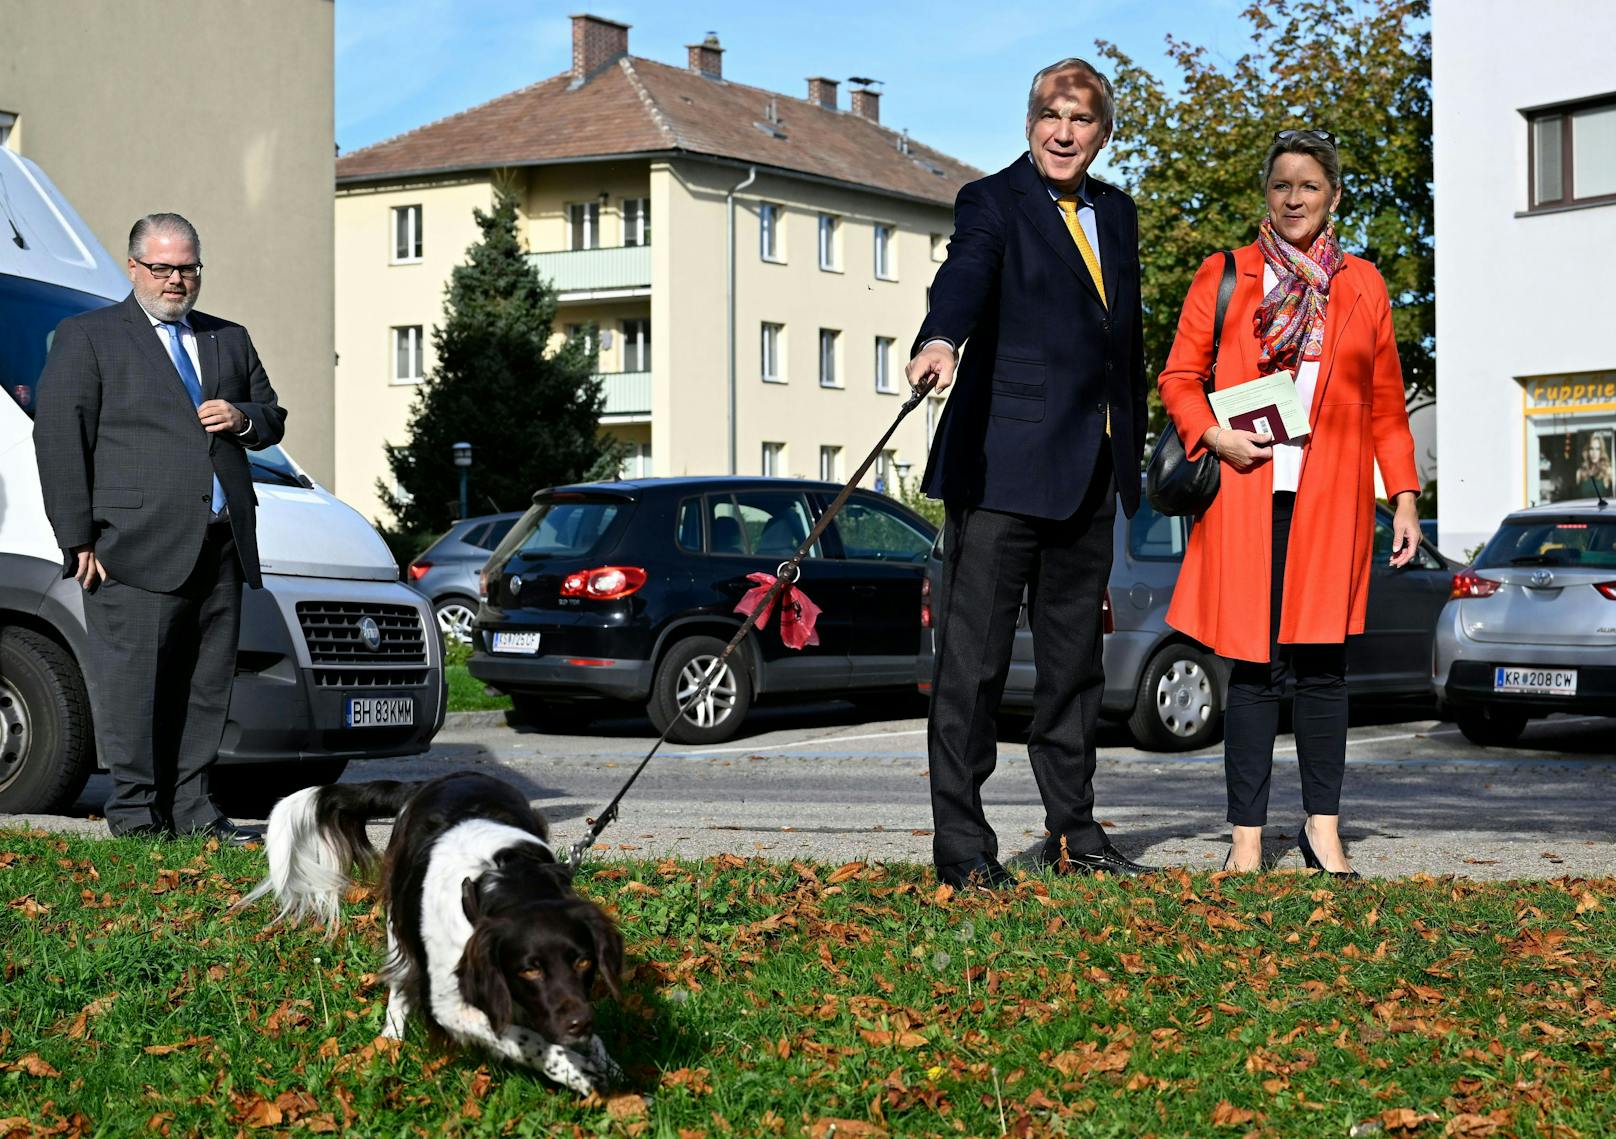 FPÖ-Kandidat Walter Rosenkranz hat seine Stimme kurz nach 10 Uhr gemeinsam mit seiner Ehefrau in einer Pfarre in Krems abgegeben.